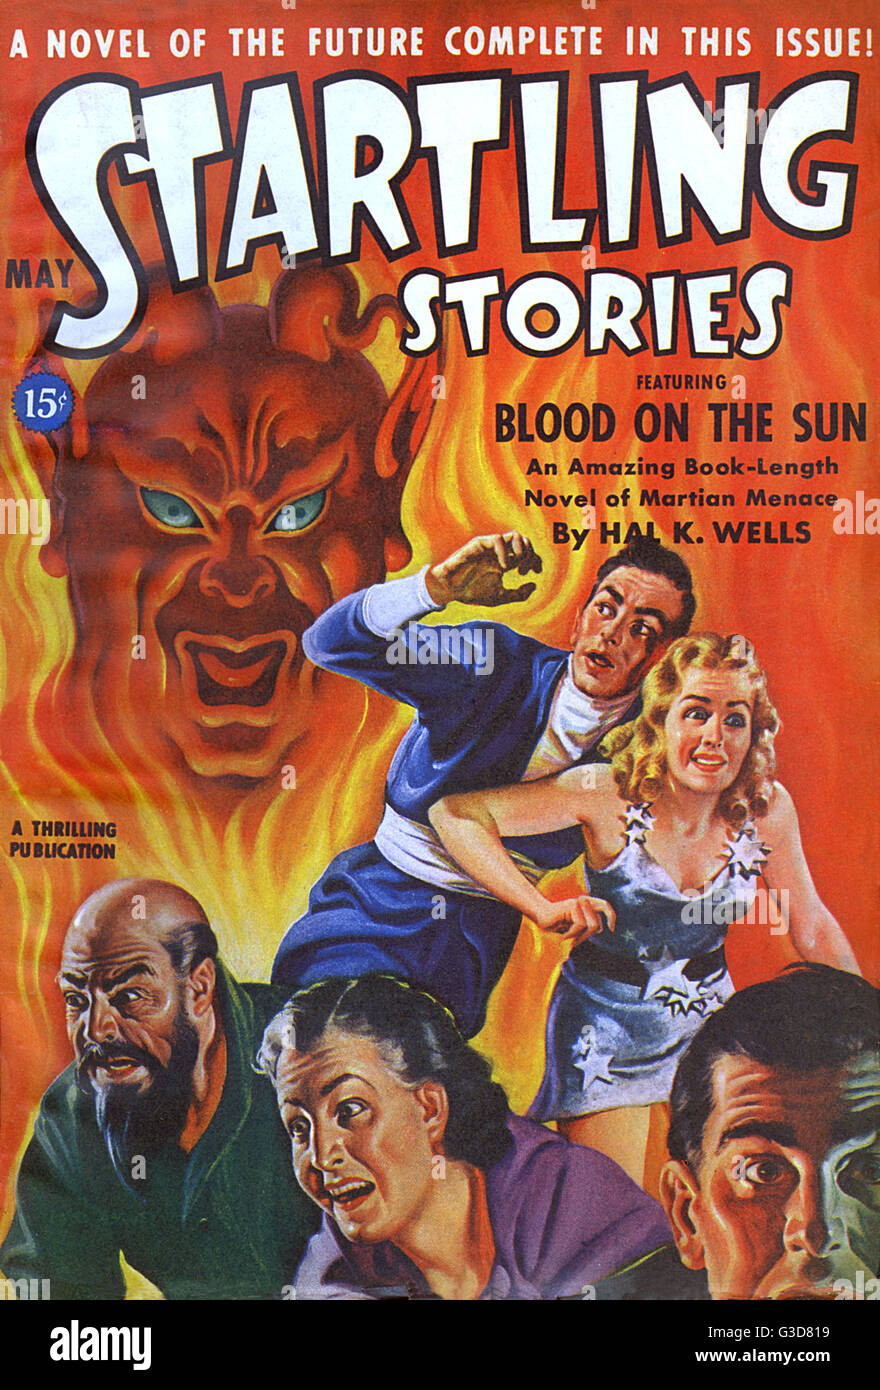 Des histoires étonnantes - du sang sur le Soleil par Hal K. Wells. Deux femmes et trois hommes fuir peureusement à partir d'une figure satanique entouré par le feu. Date : 1942 Banque D'Images